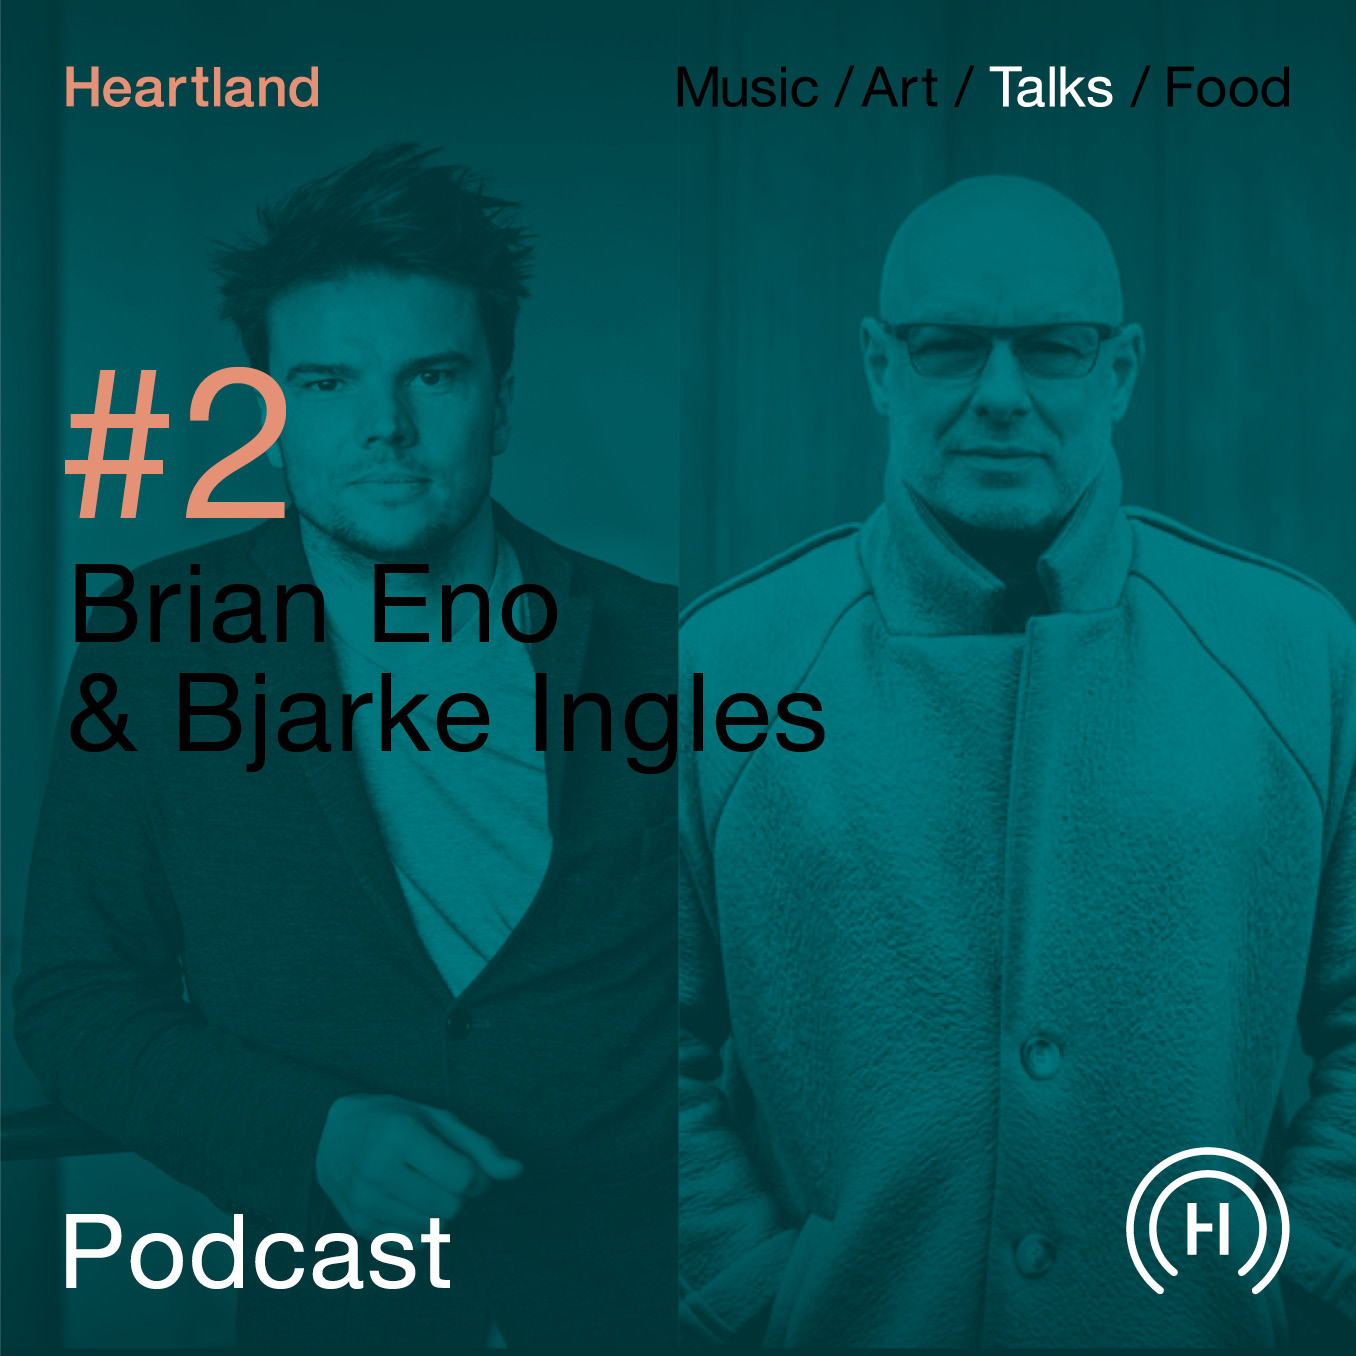 Heartland Festival podcast med Brian Eno og Bjarke Ingles